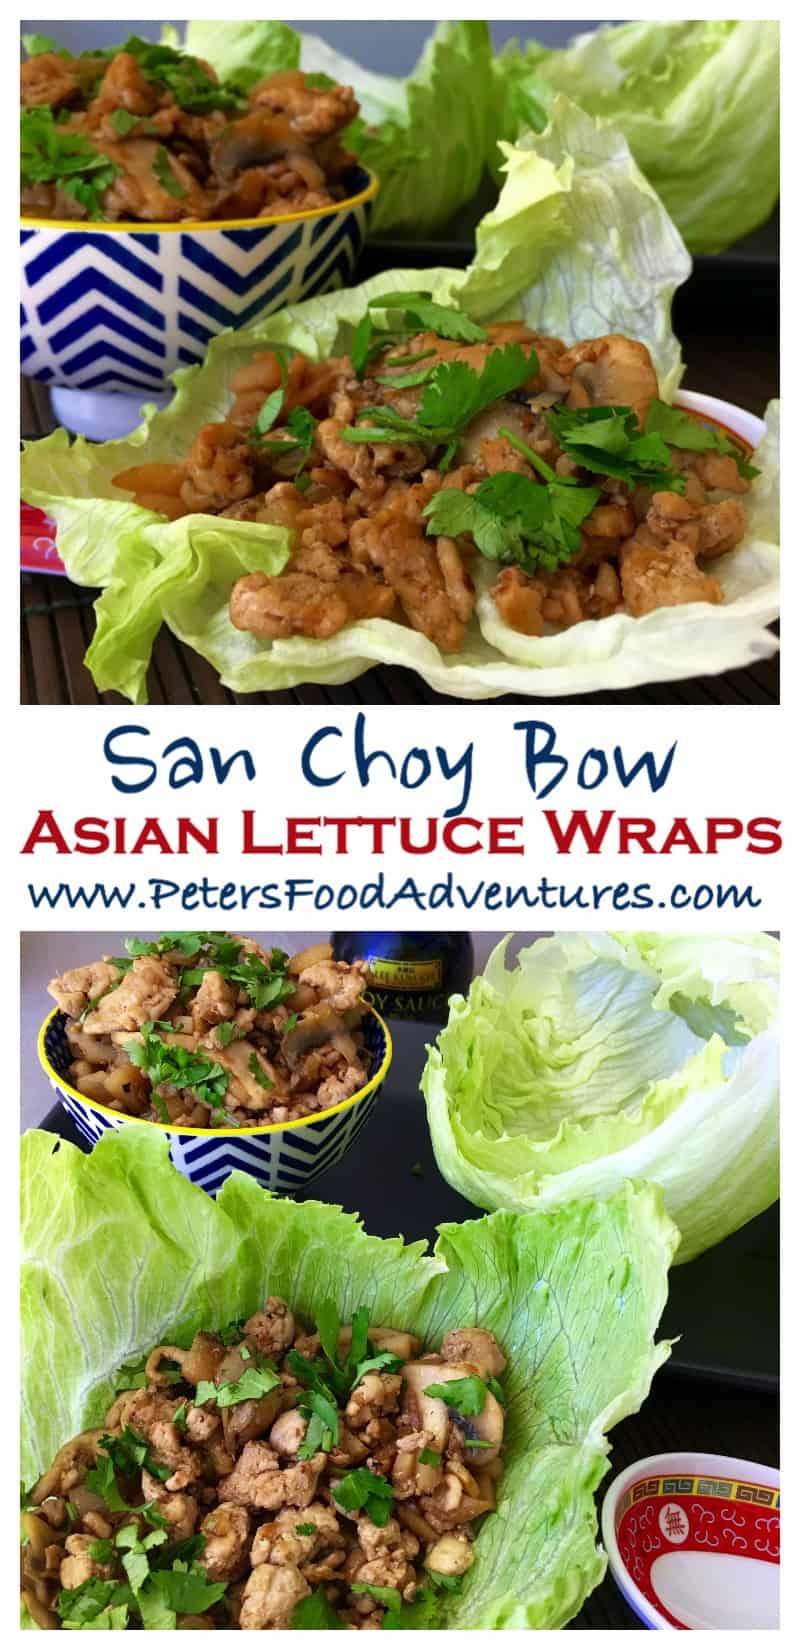 San Choy Bow - Asian Lettuce Wraps